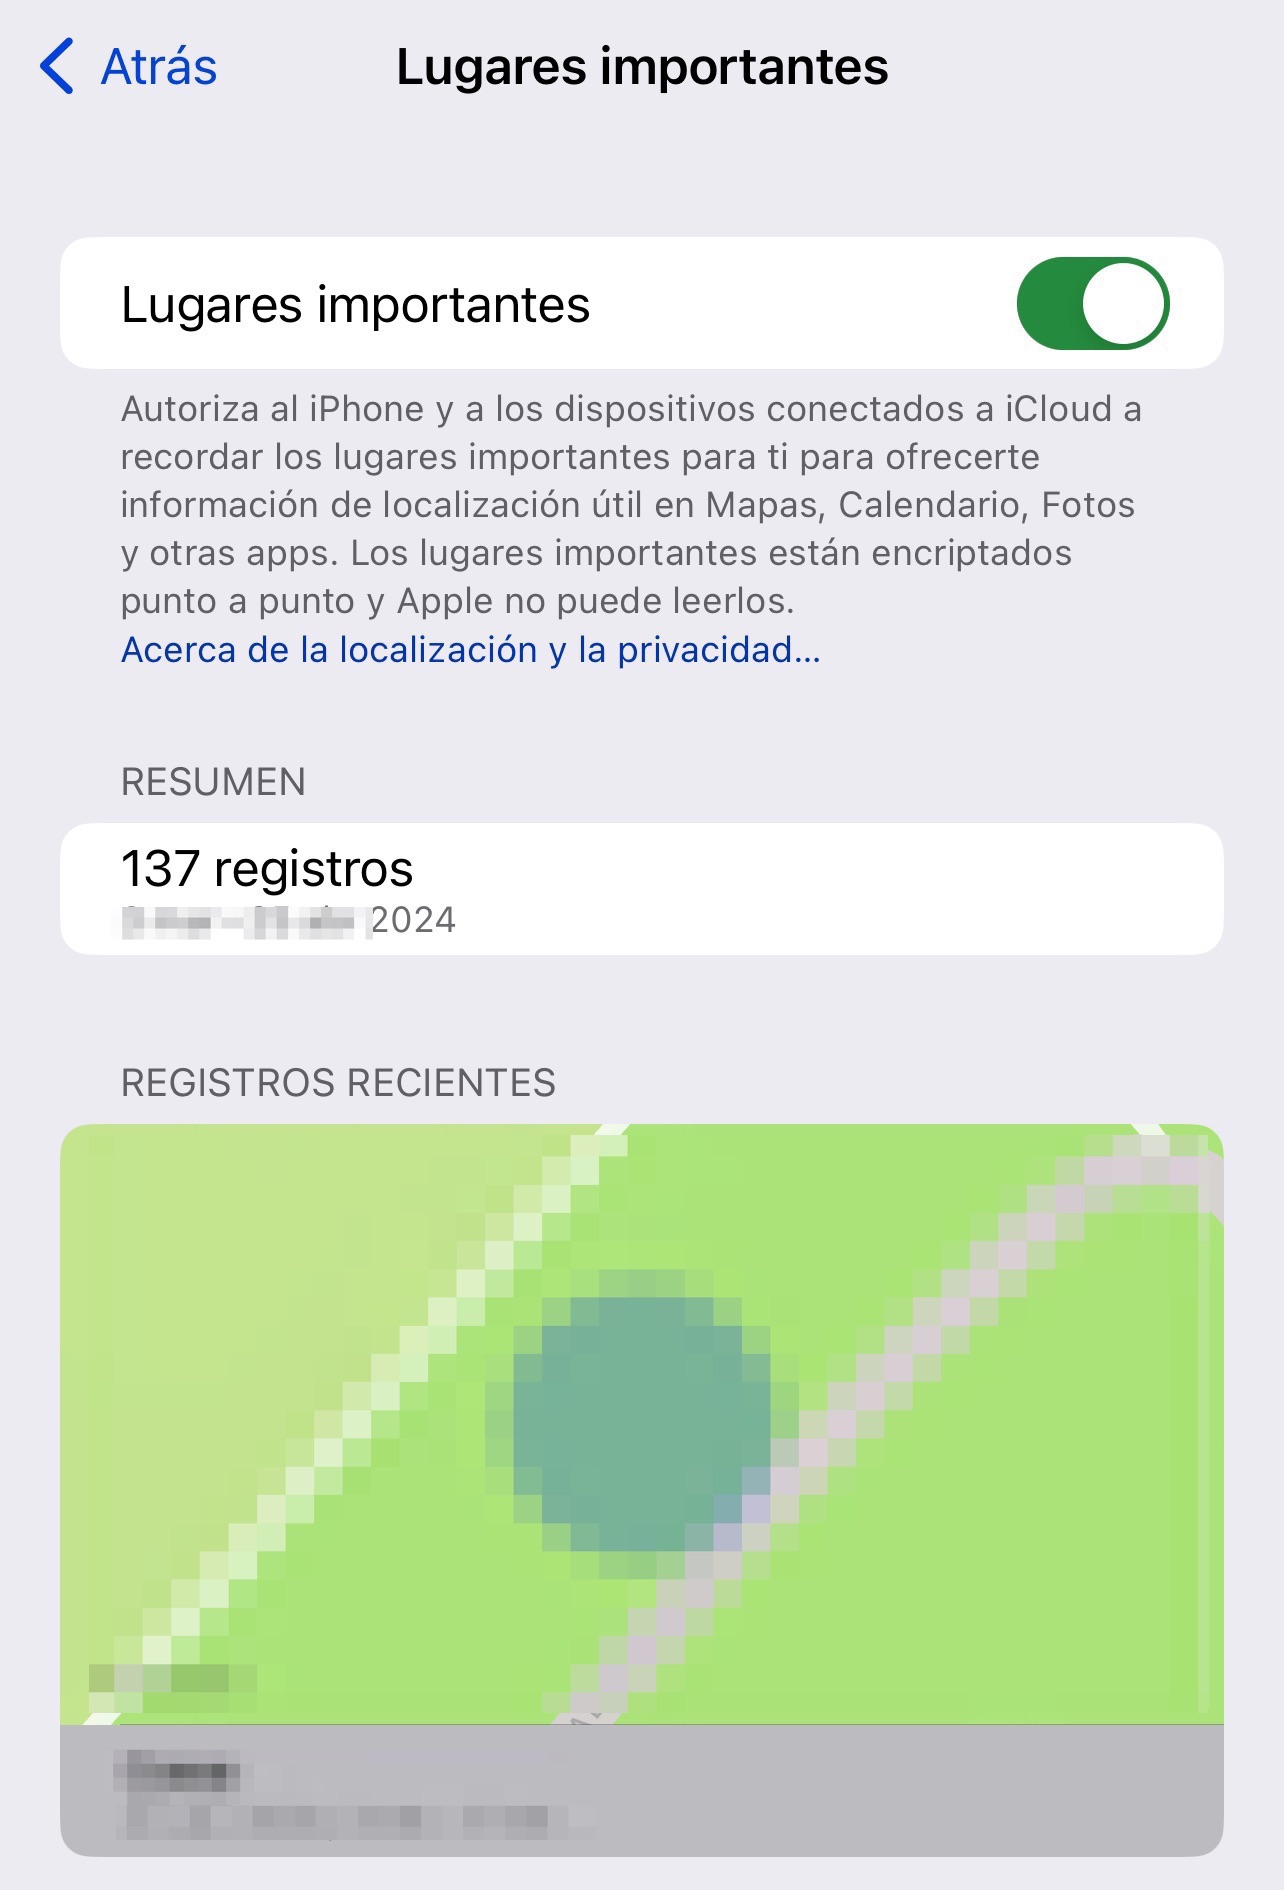 Localizaciones importantes es utilizado en iOS para determinar sitios seguros en los que permitir cambios importantes de seguridad, como por ejemplo la contraseña de tu cuenta de Apple